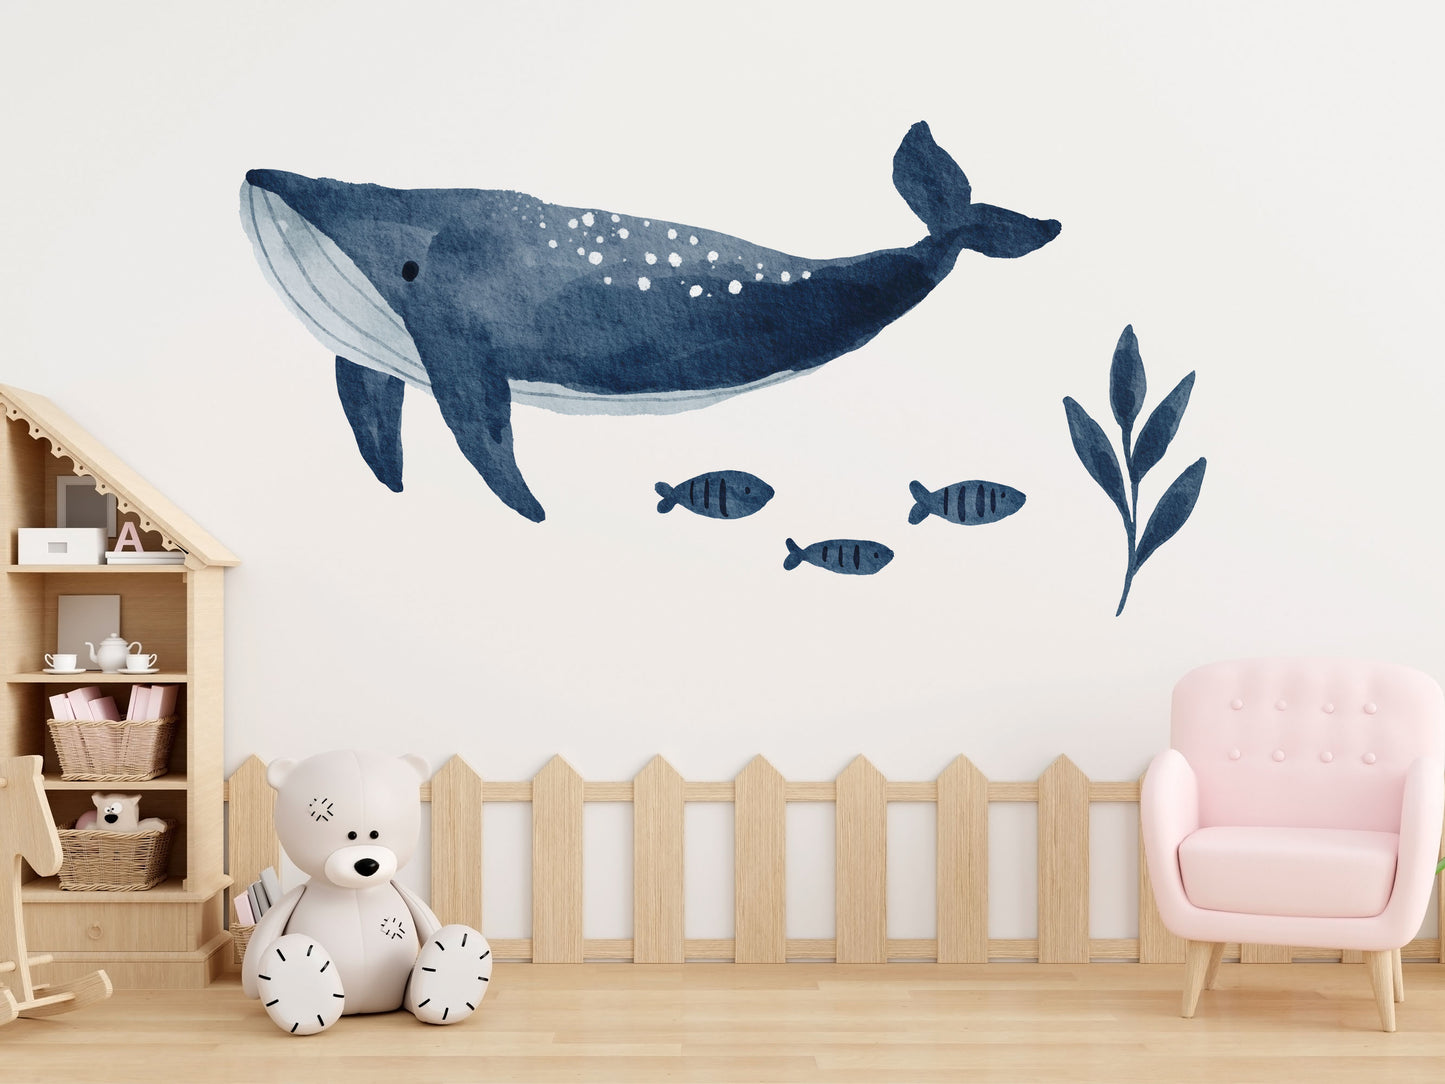 – Walls Fische Unterwasserwelt: (Wandsticker/Wandtattoo) Mural und Buckelwal